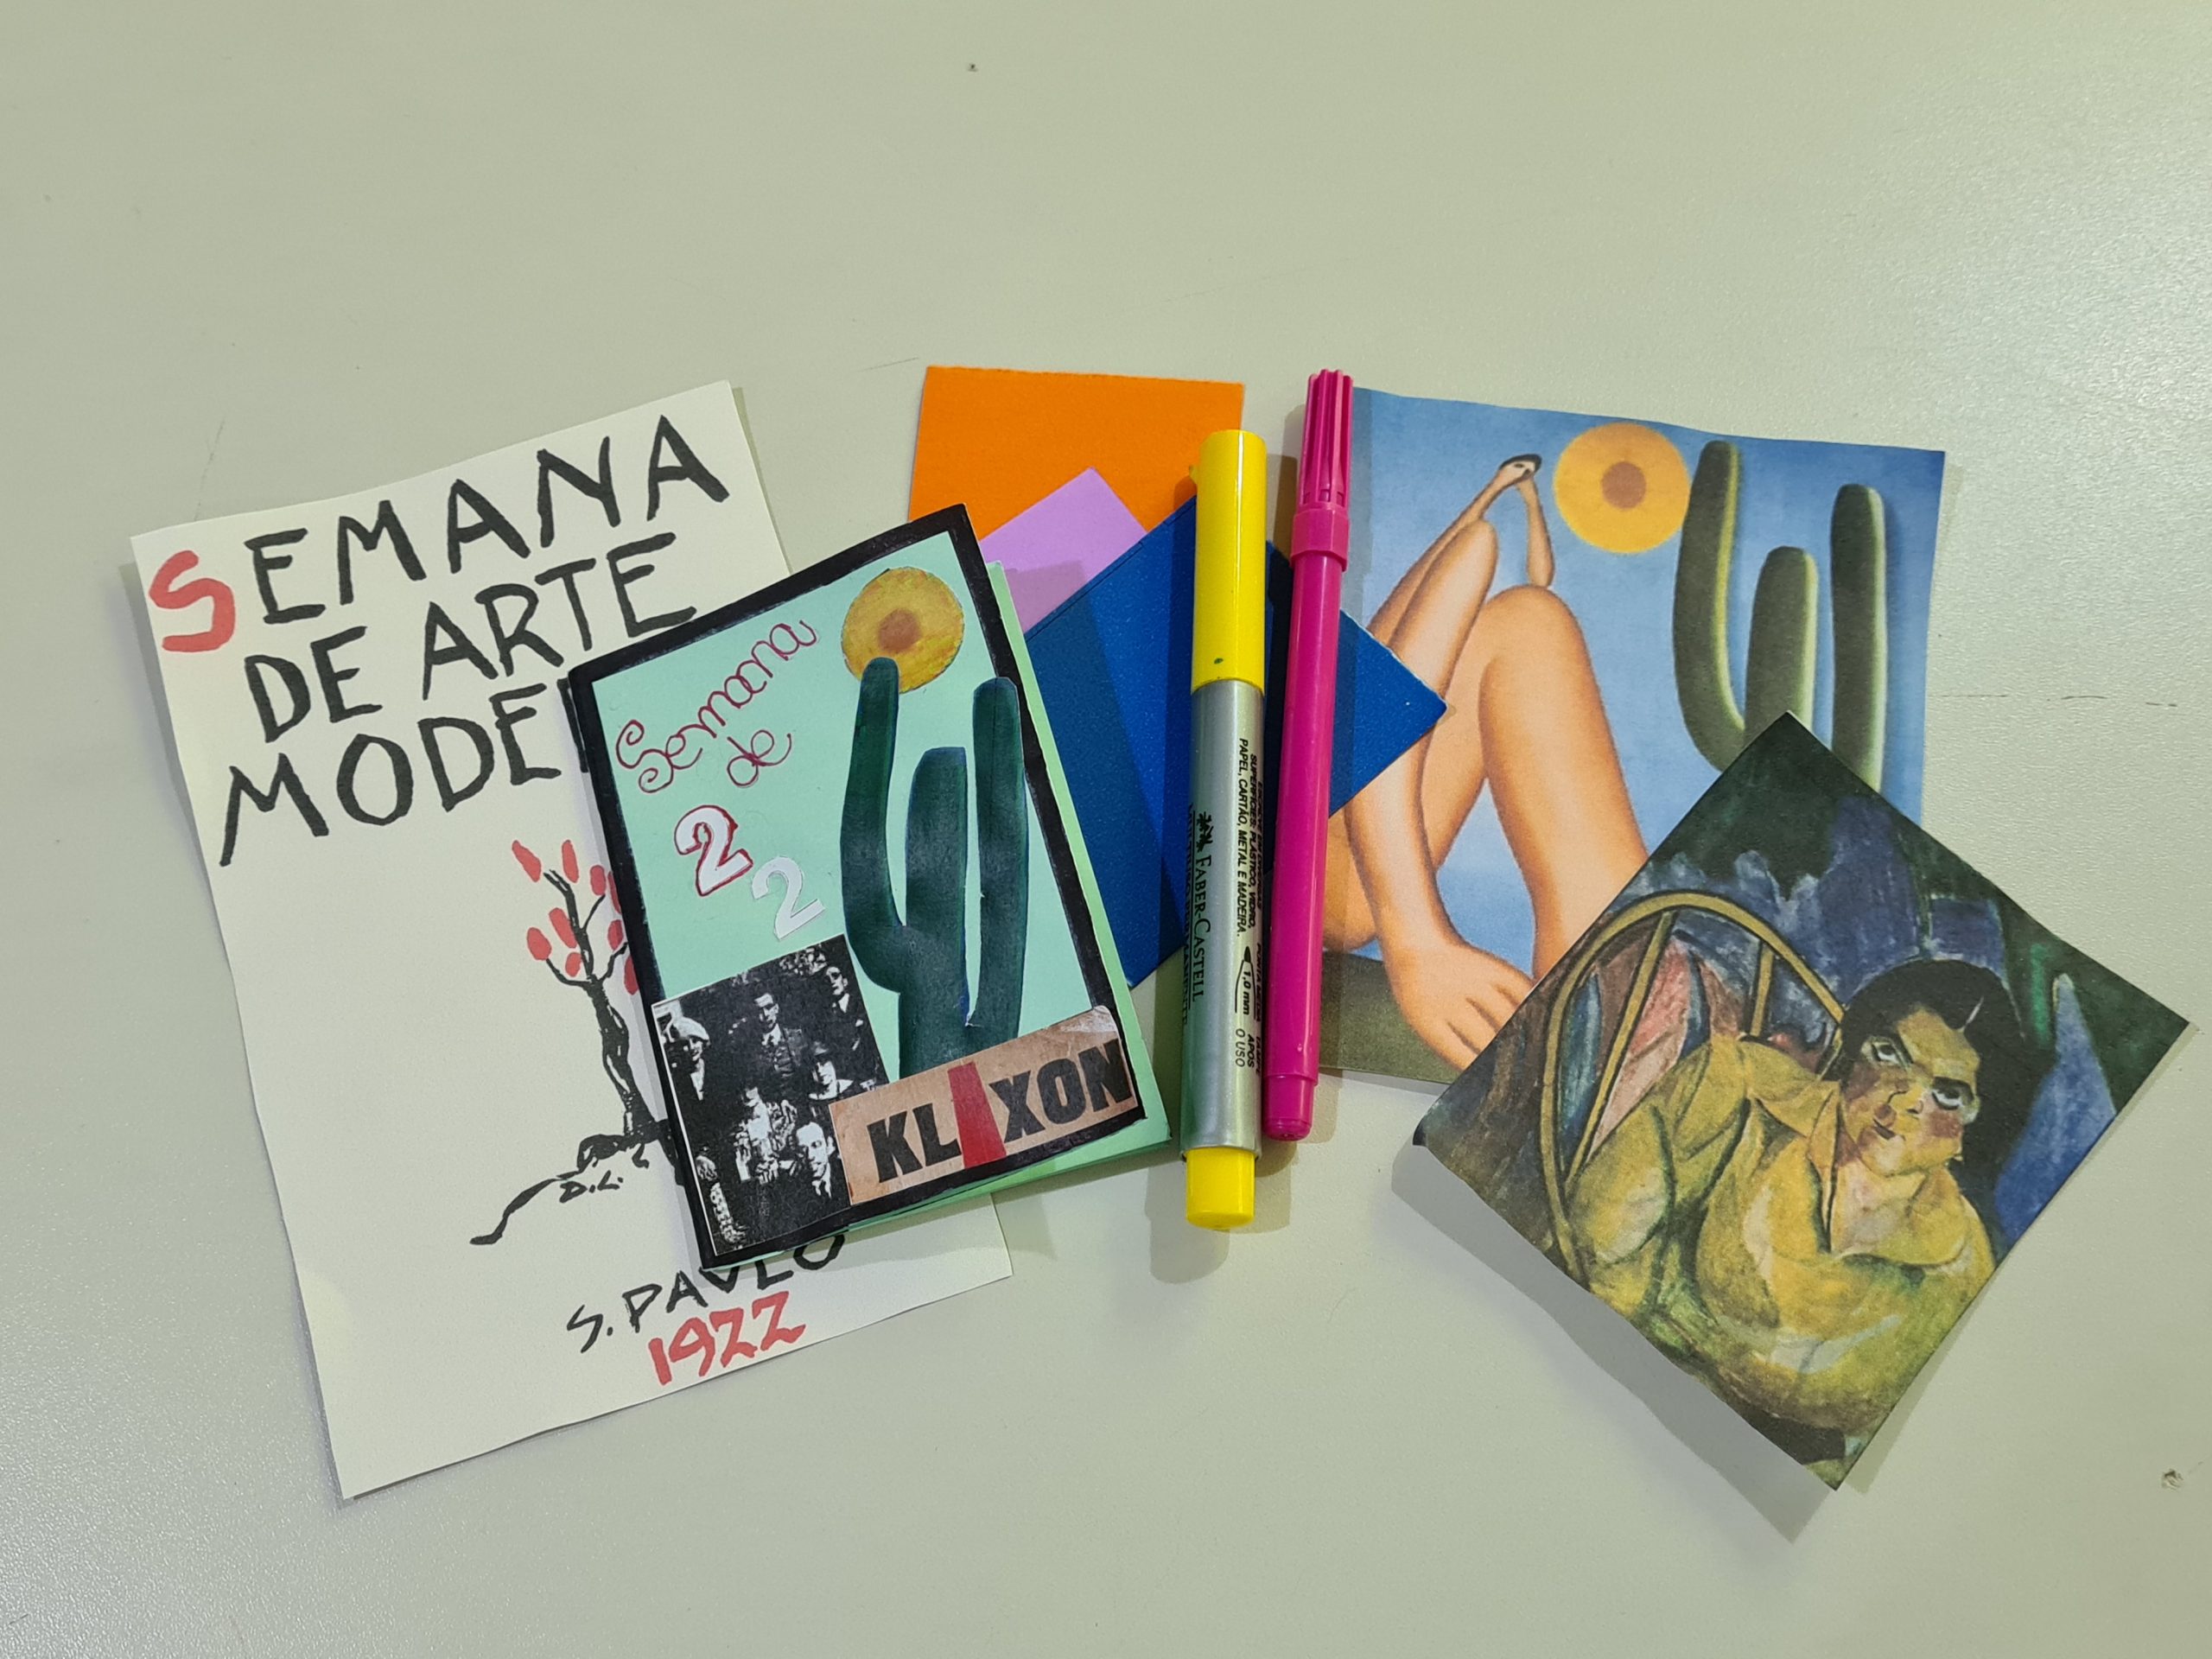 Foto com imagens e recortes referentes a semana de arte moderna. Nela há um cartaz pequeno da semana se arte moderna, uma fanzine, recorte da obra "Abaporu" de Tarsila do Amaral e de "A Boba" de Anita Malfatti.